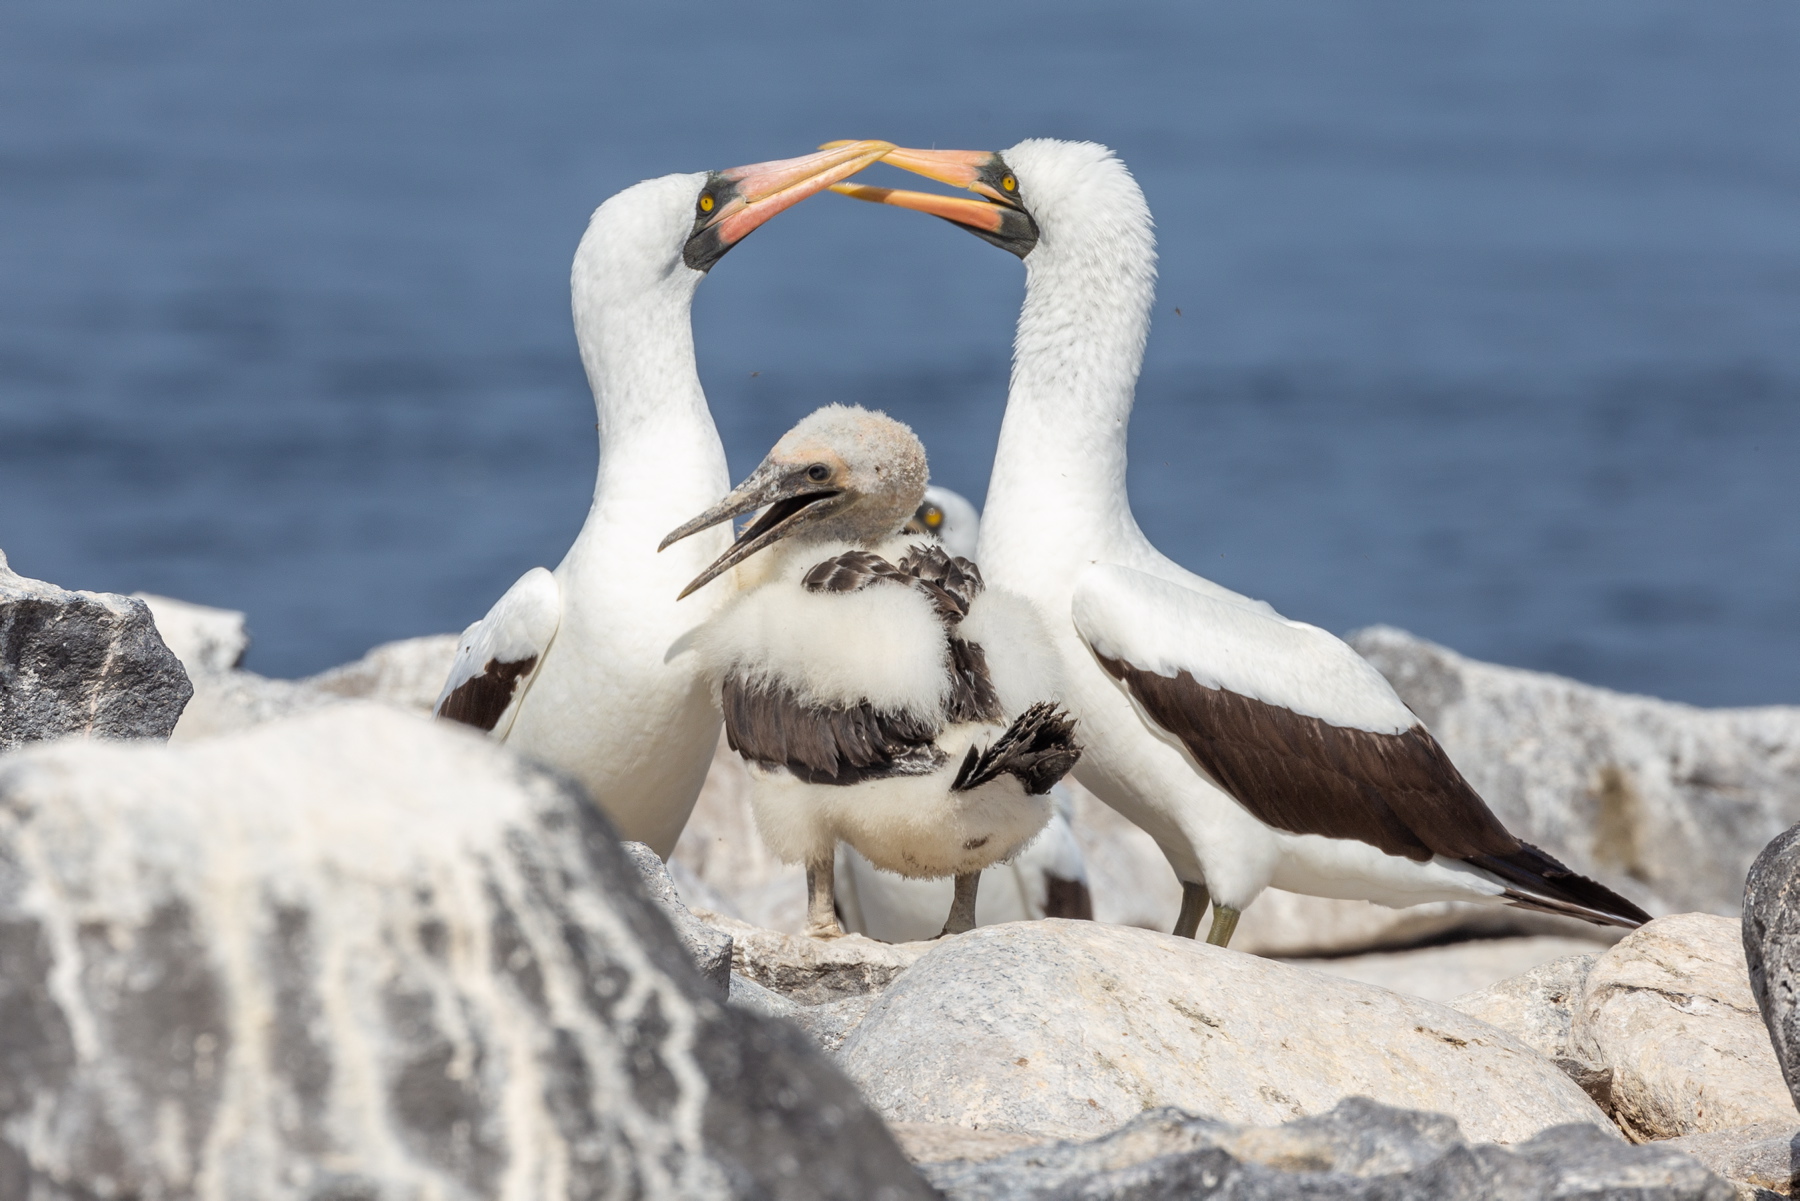 Albatrosy galapagoskie są gatunkiem endemicznym – żyją tylko na jednej wyspie, Españoli. Przylatują tam wiosną z morskich łowów, by złożyć jaja